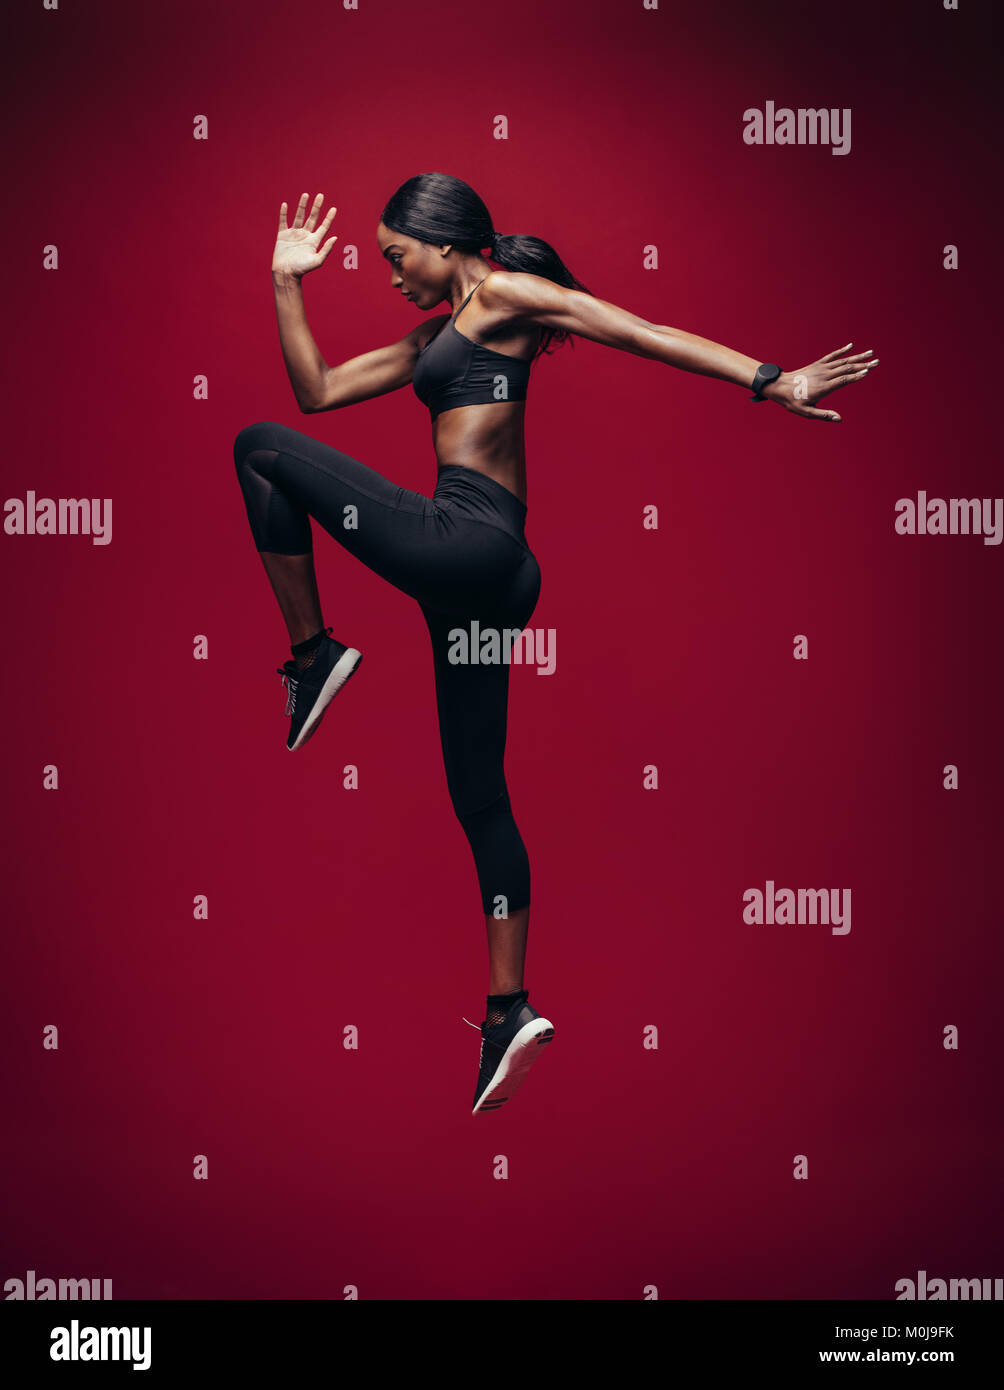 Femme sport faisant sauter et qui s'étend d'entraînement. Toute la longueur de santé de la jeune femme africaine de faire de l'exercice de remise en forme sur fond rouge. Banque D'Images